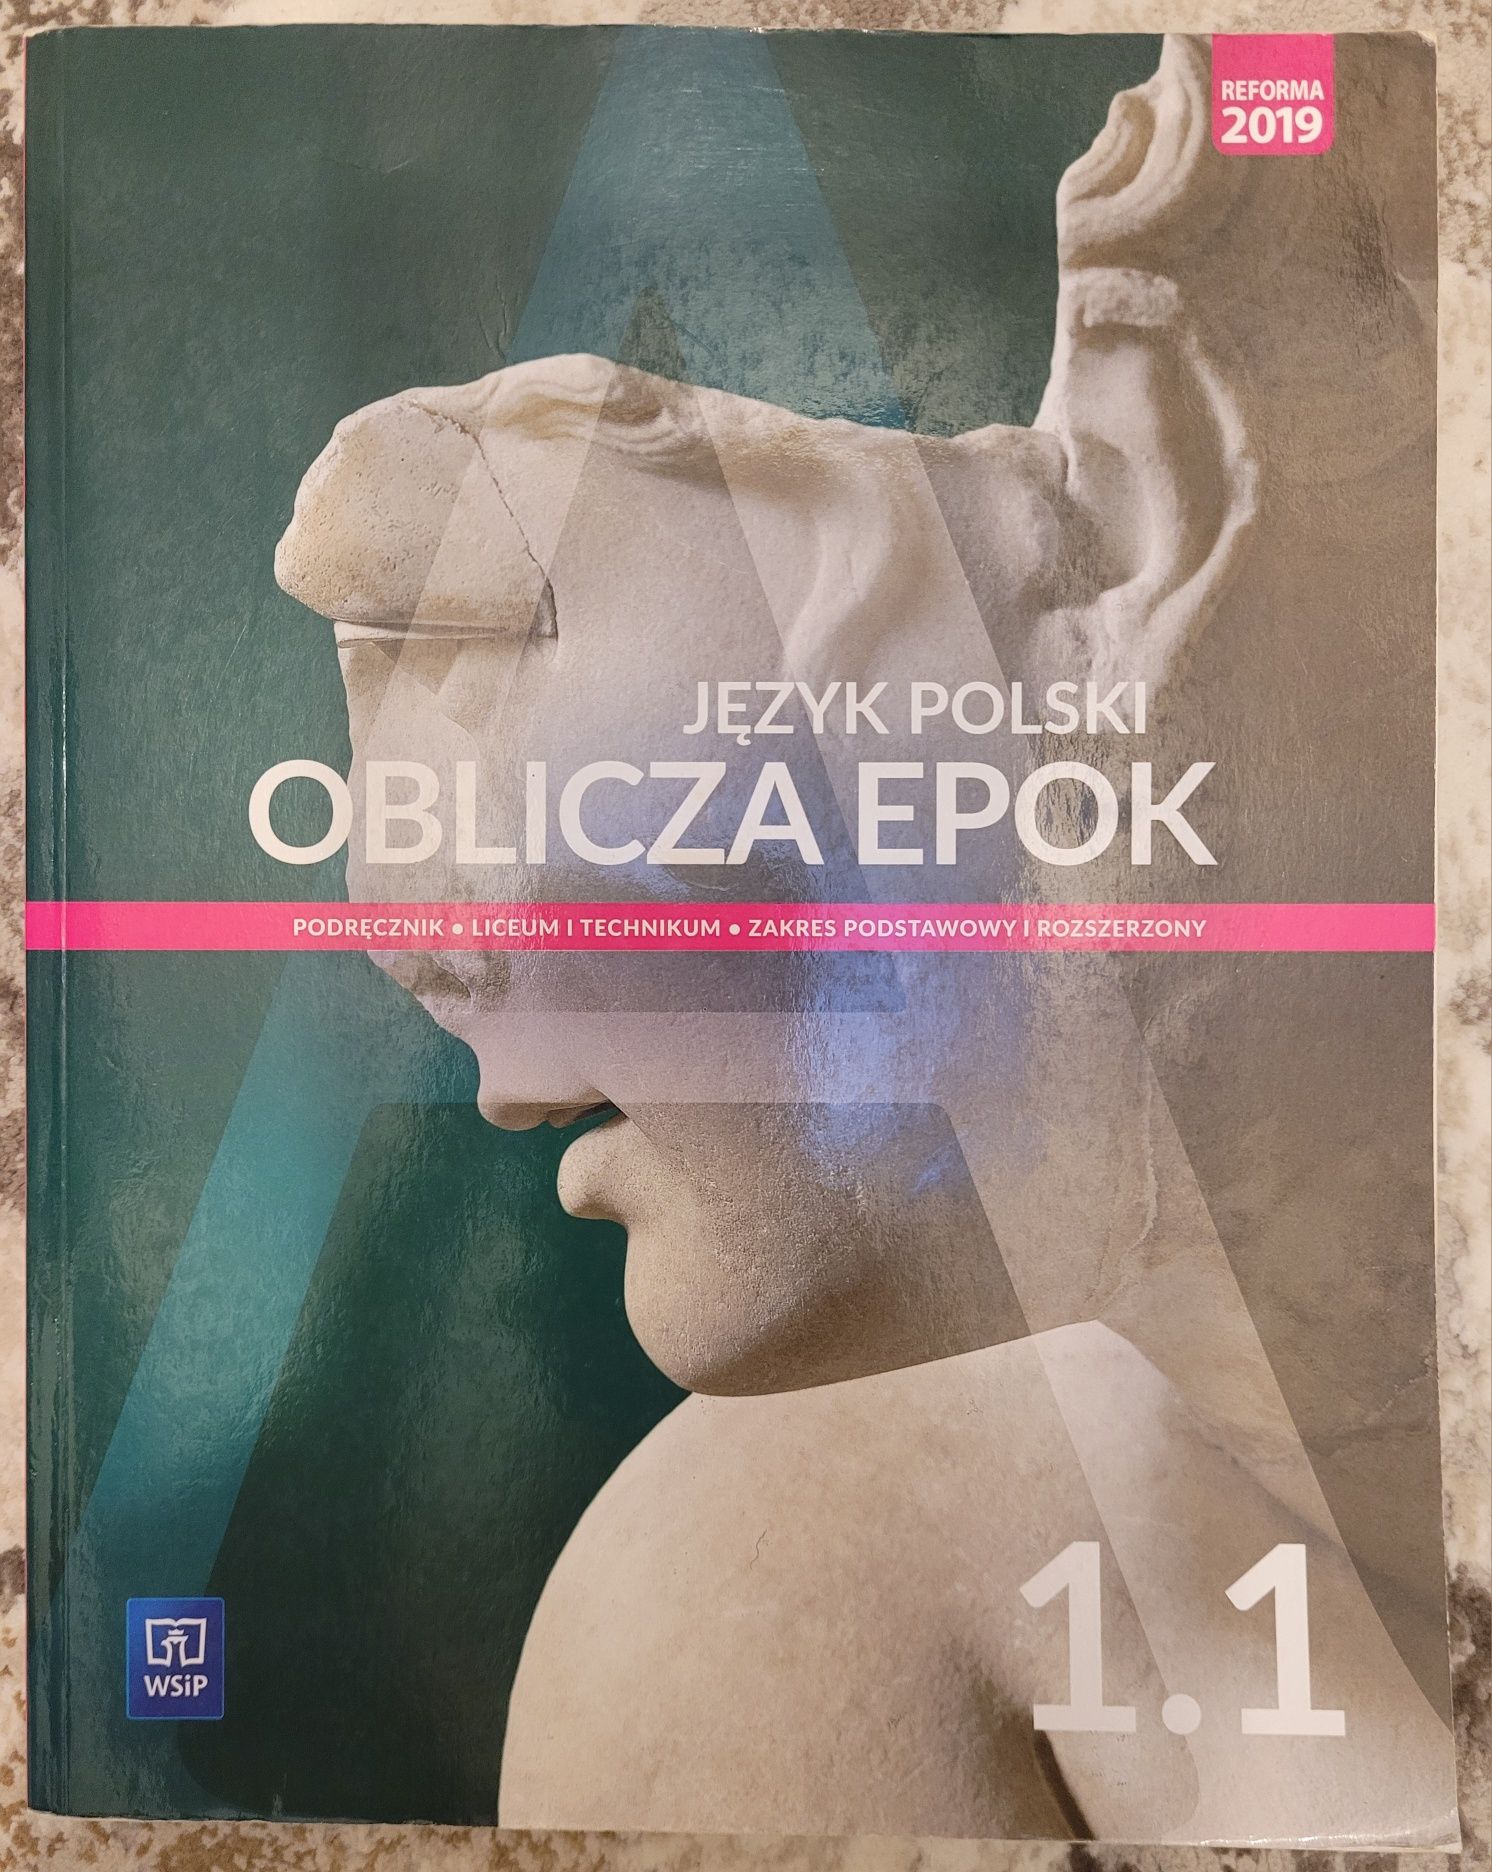 Jezyk polski Oblicza Epok 1.1 podręcznik WSIP podstawowy i rozszerzony